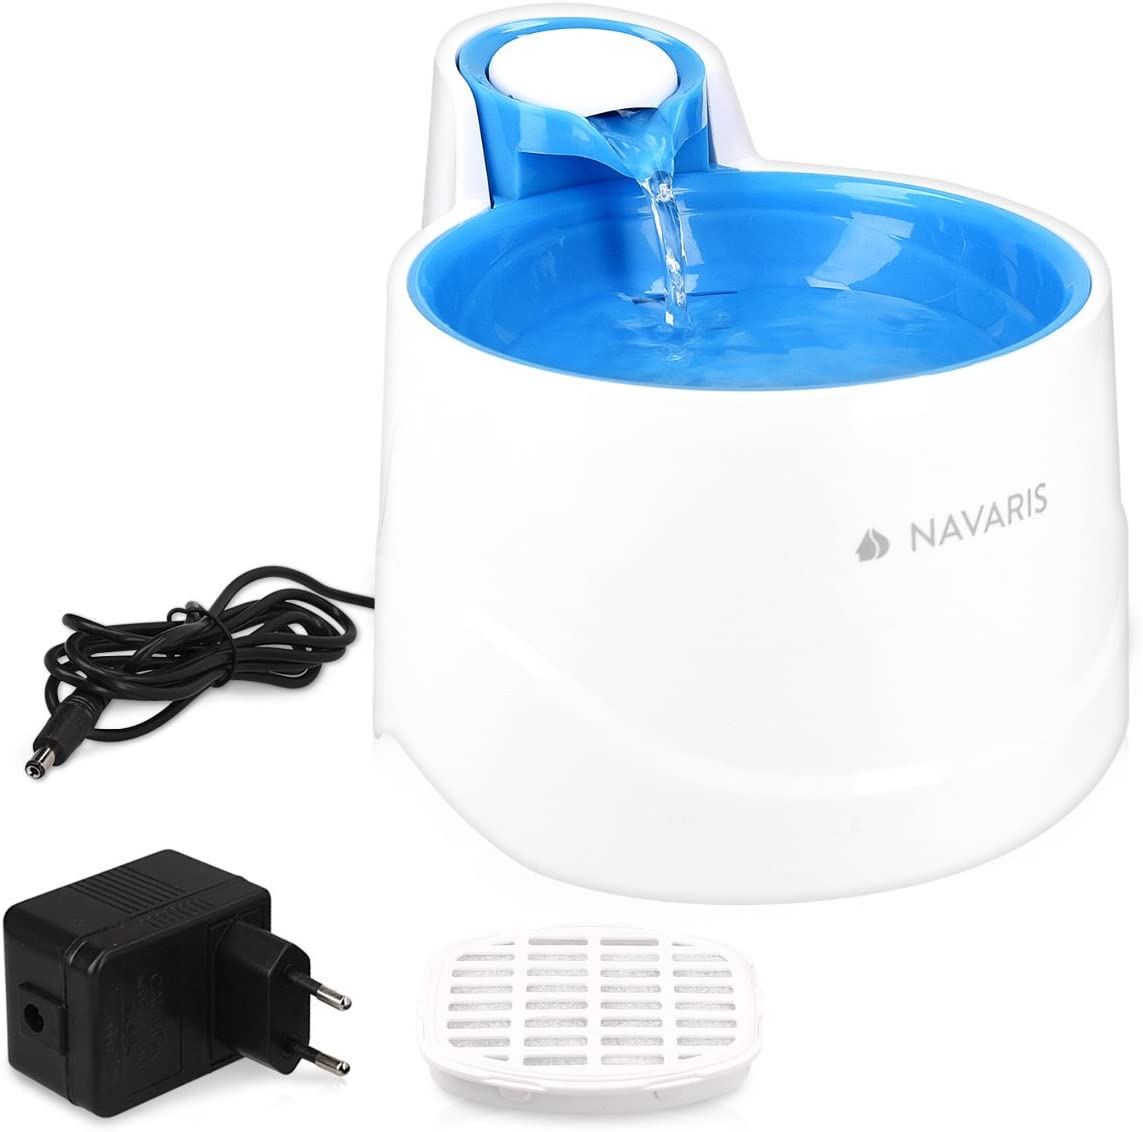  Navaris Fuente de Agua para Gatos y Perros - Bebedero de 2 litros con Filtro y Bomba Sumergible - Dispensador de Agua con Flujo Ajustable Color Azul 